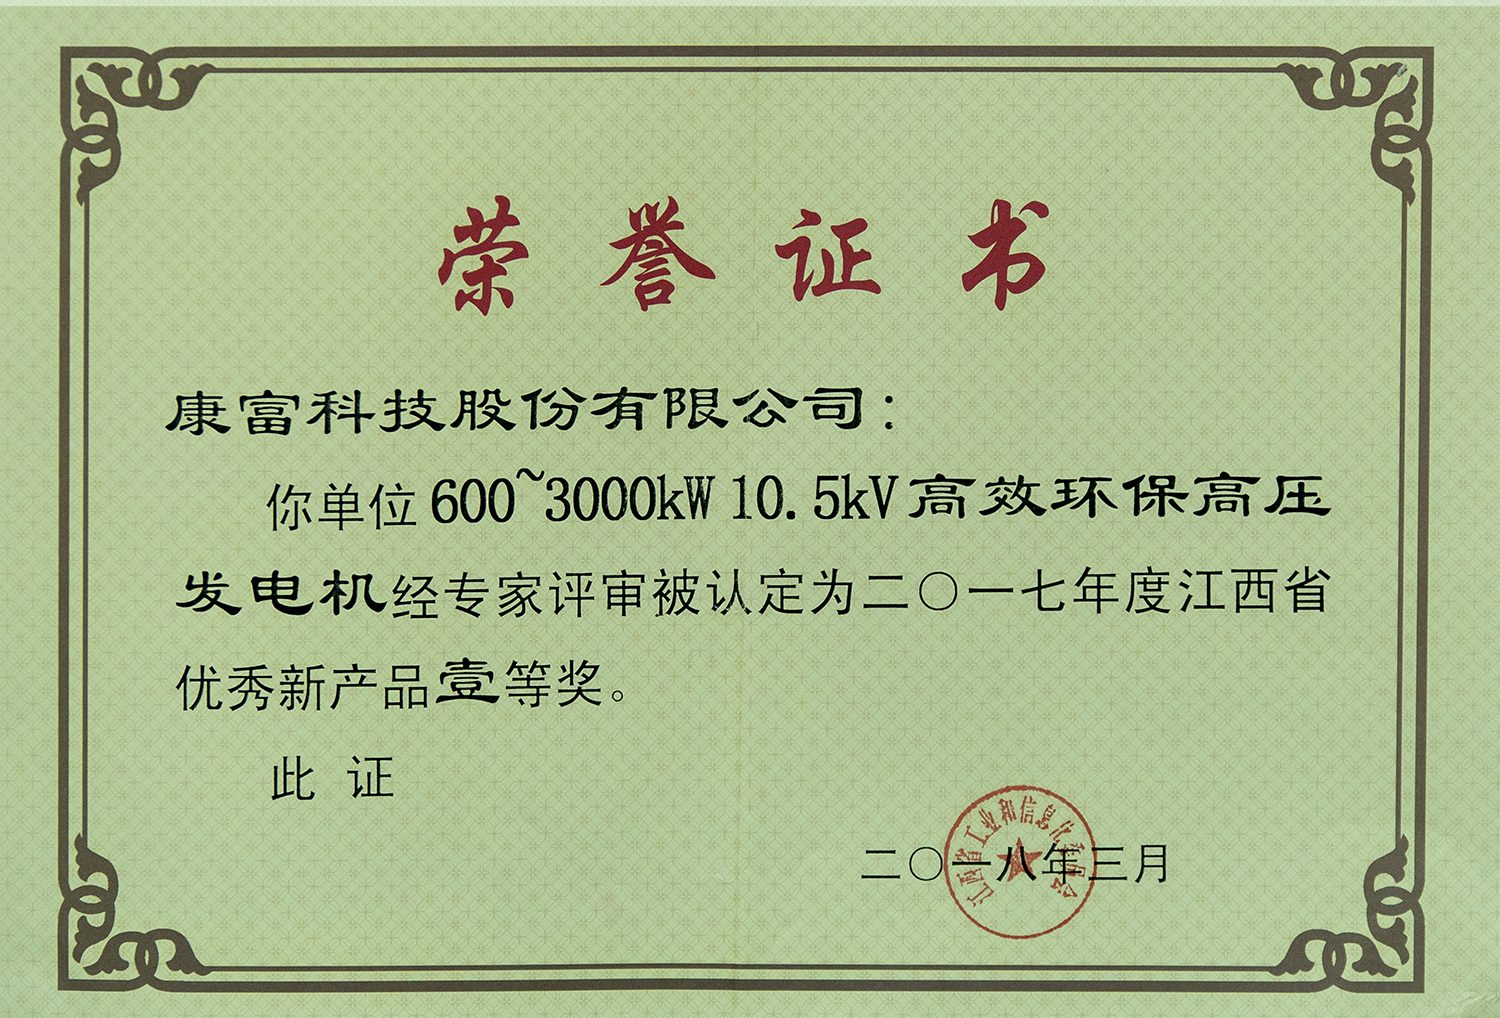 600~3000kW 10.5kV高效环保高压发电机 省优秀新产品一等奖（省工信委）